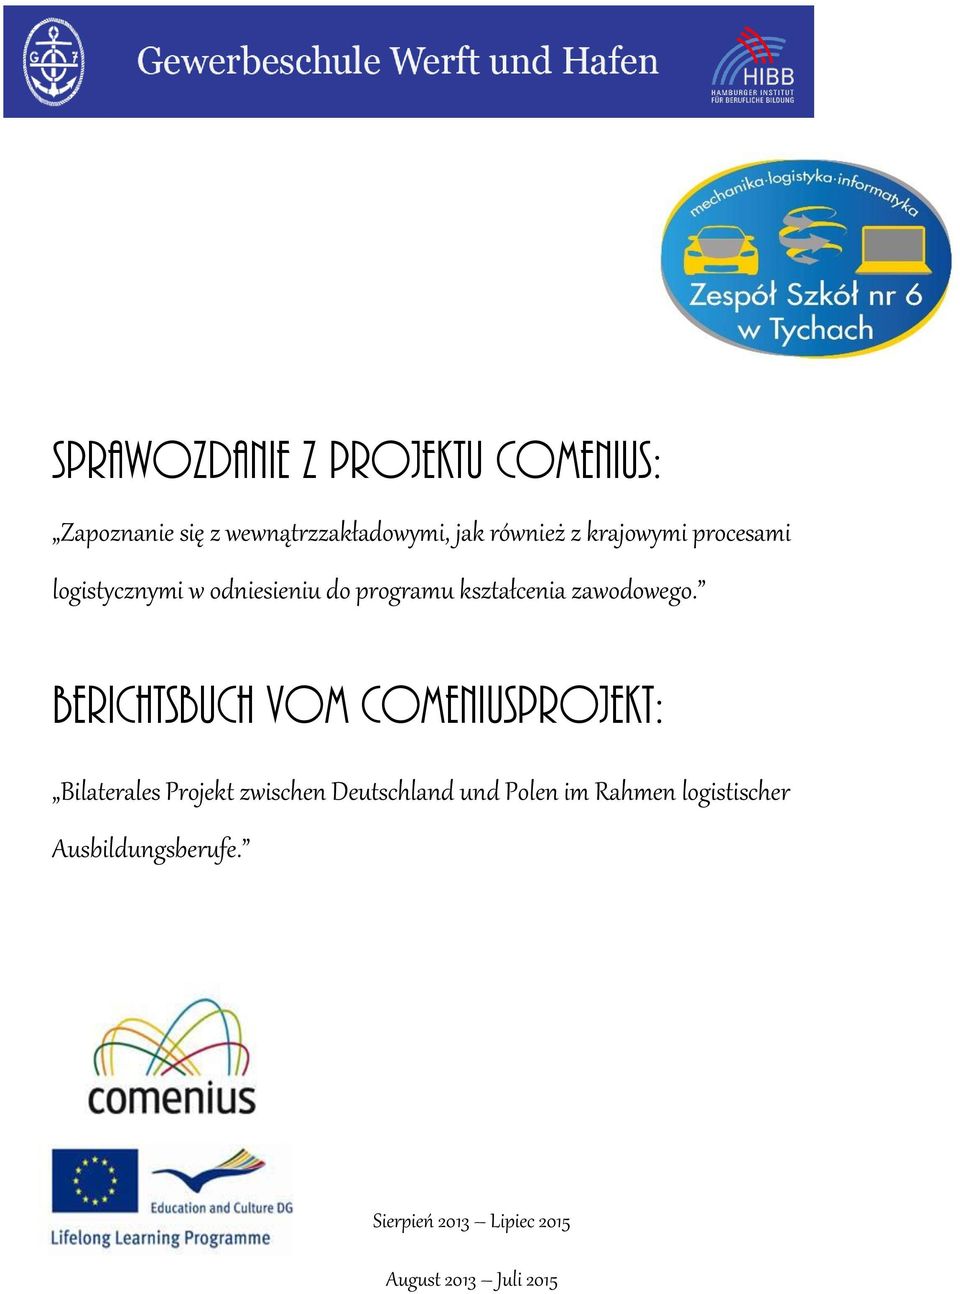 Berichtsbuch vom Comeniusprojekt: Bilaterales Projekt zwischen Deutschland und Polen